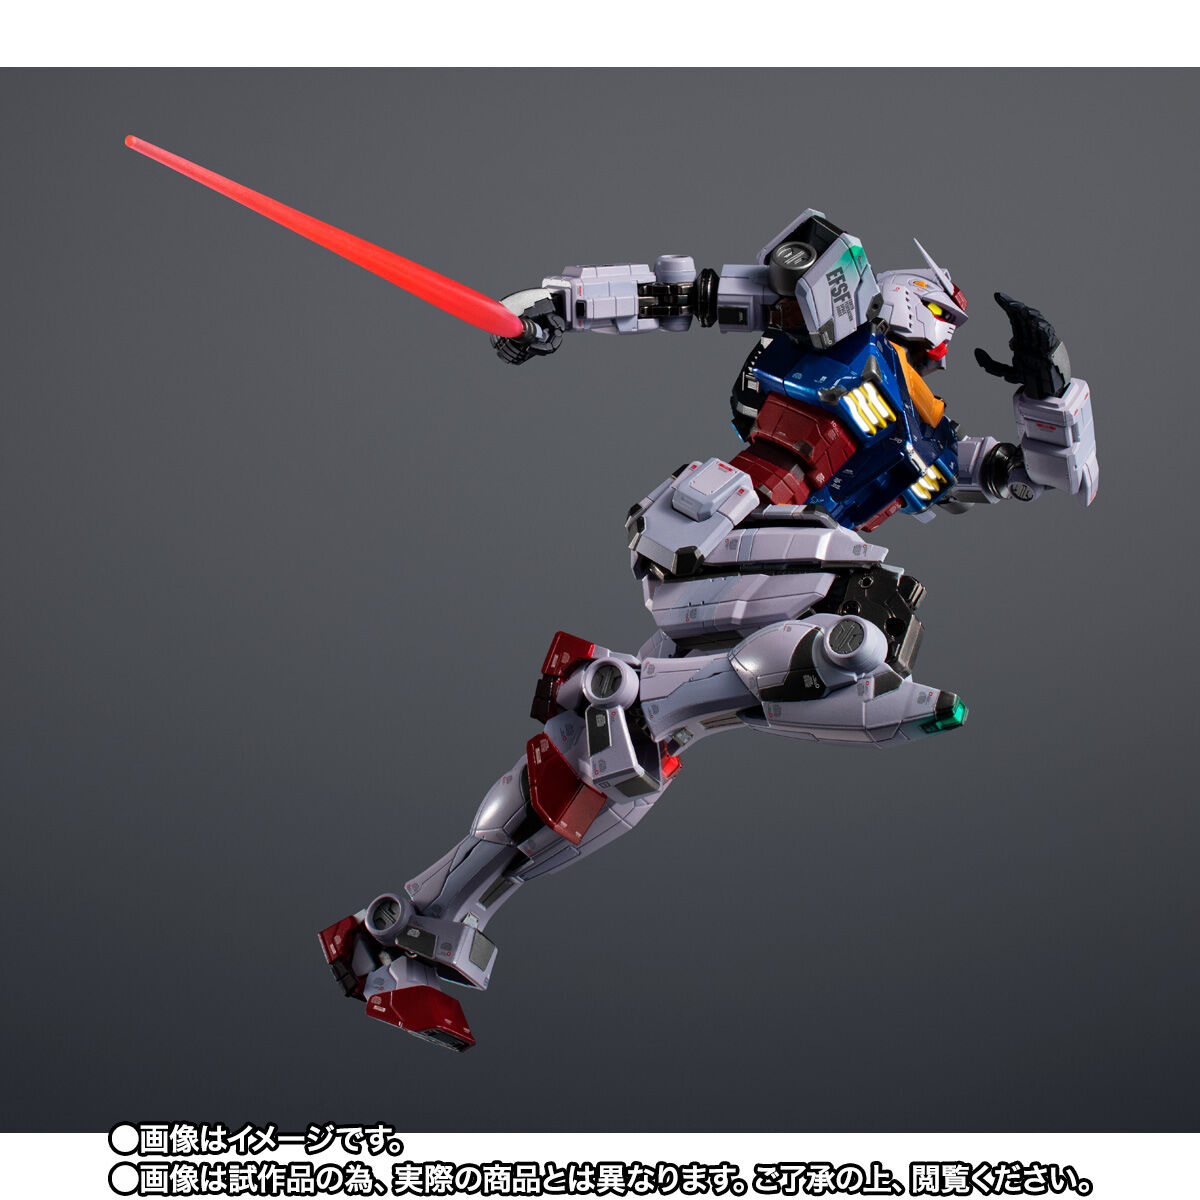 機動戦士ガンダム「超合金×GUNDAM FACTORY YOKOHAMA RX-78F00 GUNDAM -Night illuminated ver.-」のフィギュア画像